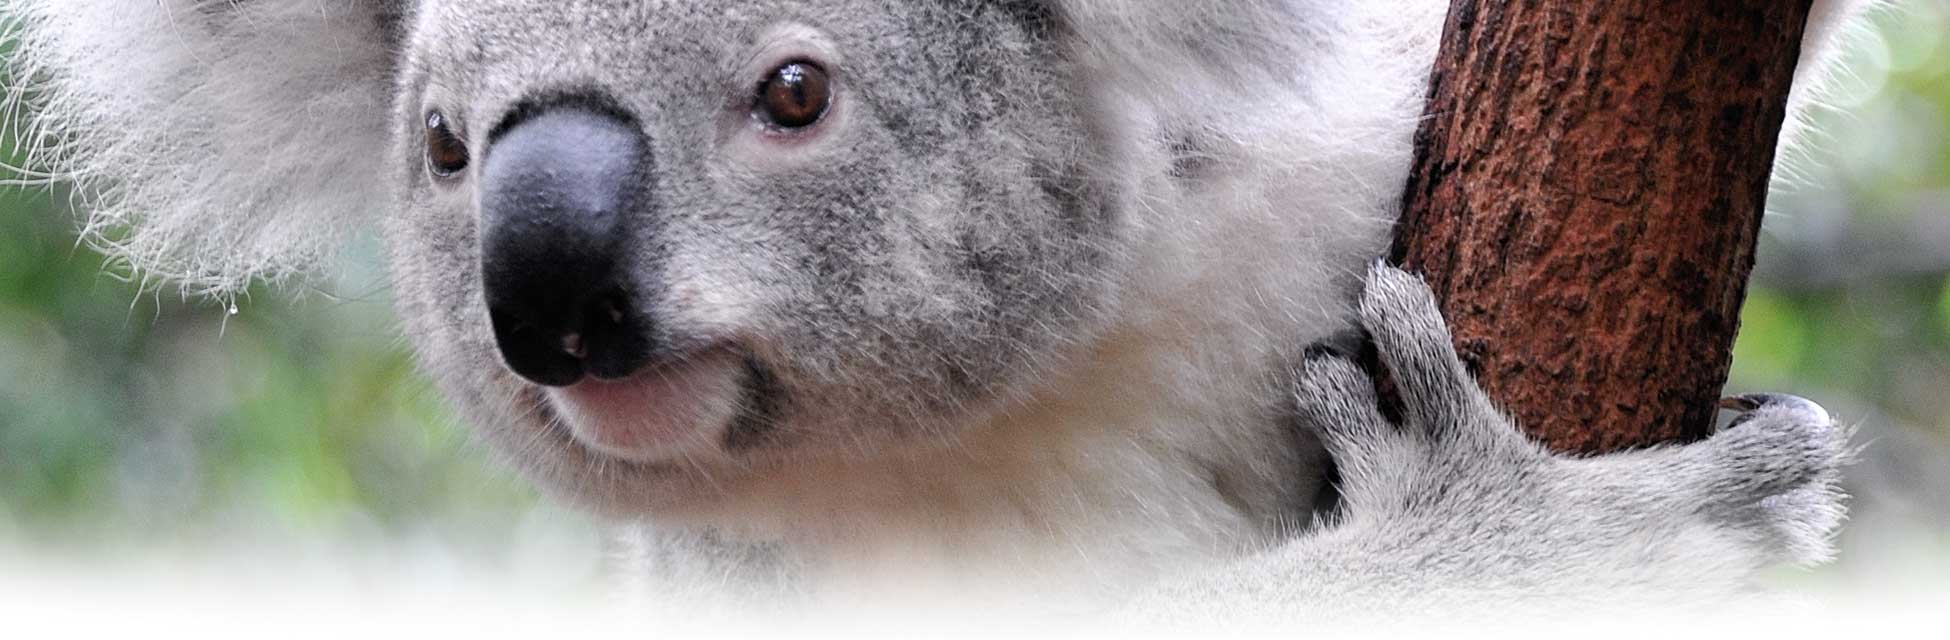 australie_koala.jpg